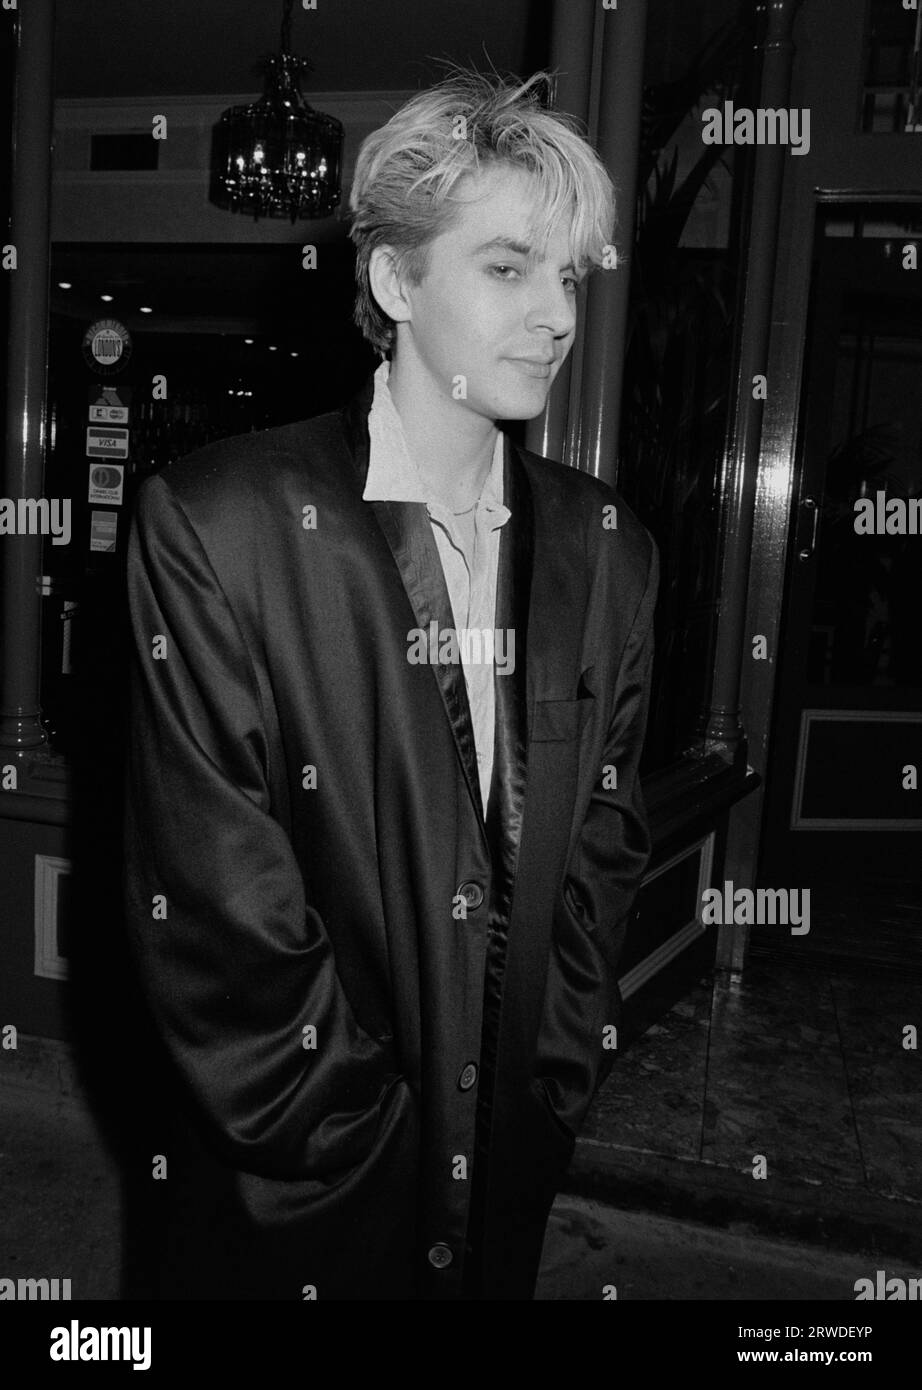 LONDRA, REGNO UNITO. Settembre 1986: La star dei Duran Duran Nick Rhodes partecipa a un evento di beneficenza a Londra. Foto del file © Paul Smith/Featureflash Foto Stock